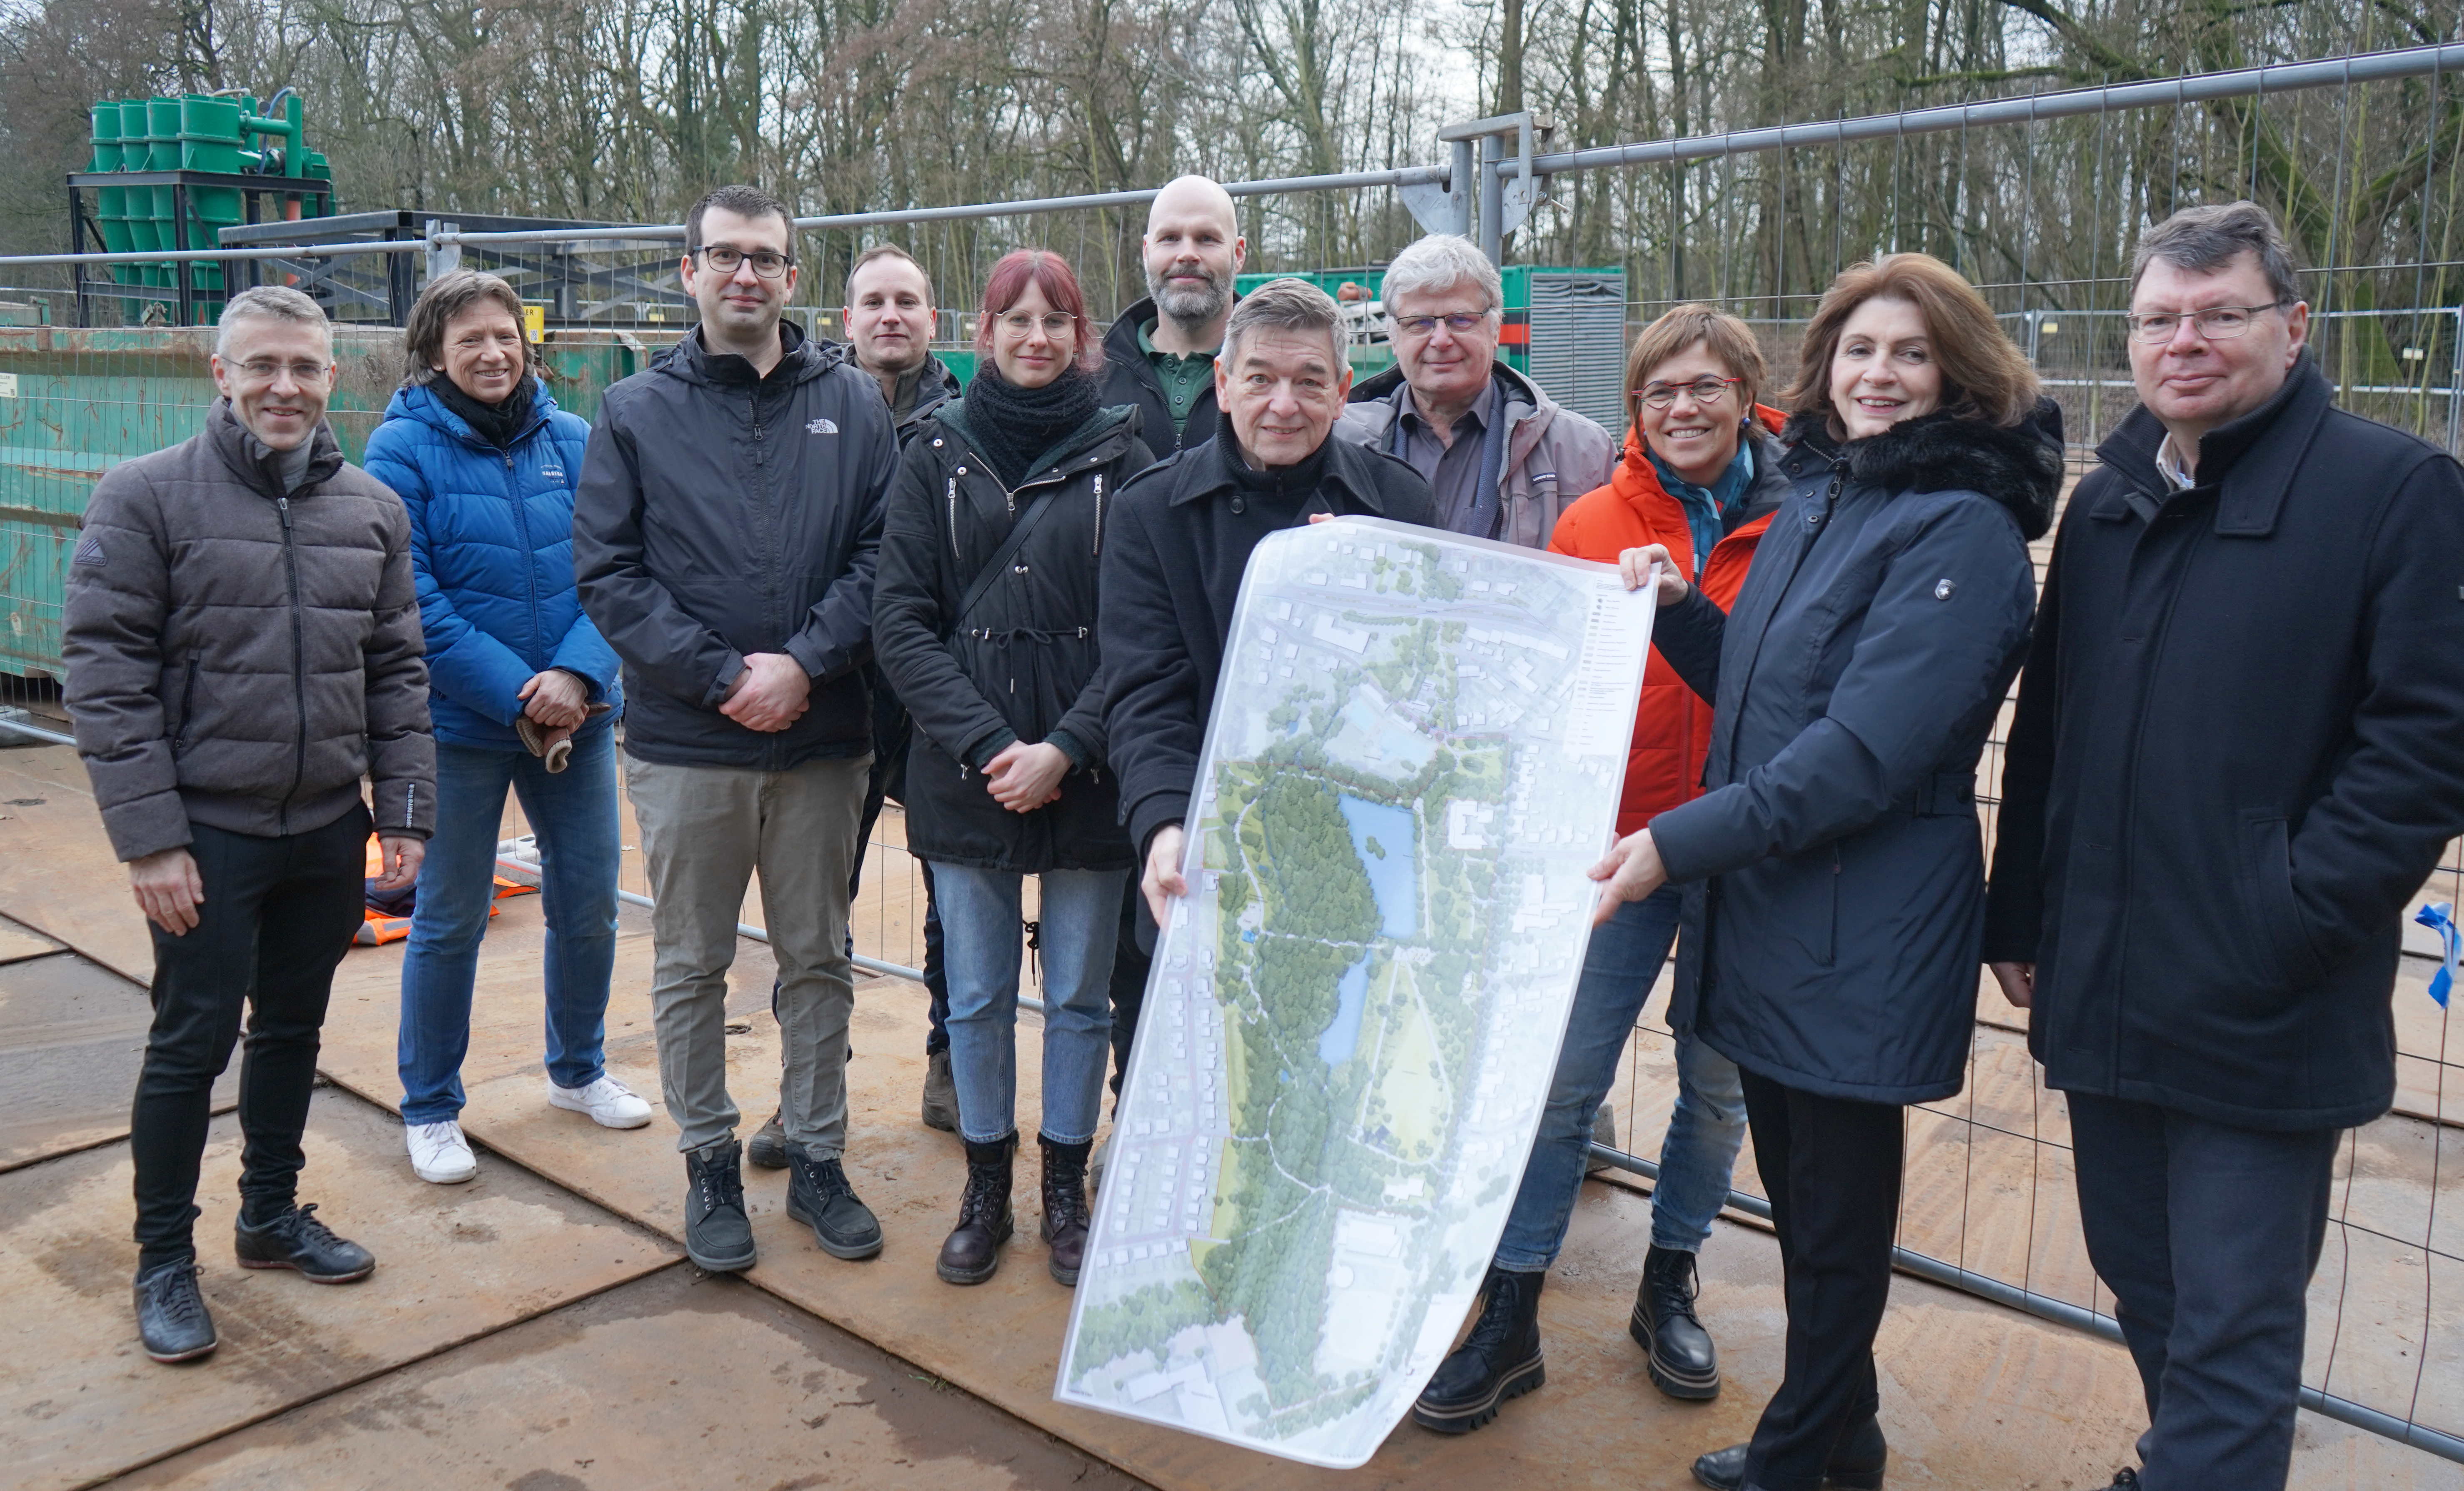 Volkspark: Umbau zum Klimapark gestartet - IGA-2027-Besucherinnen und Besucher sollen auch nach Marl gelockt werden